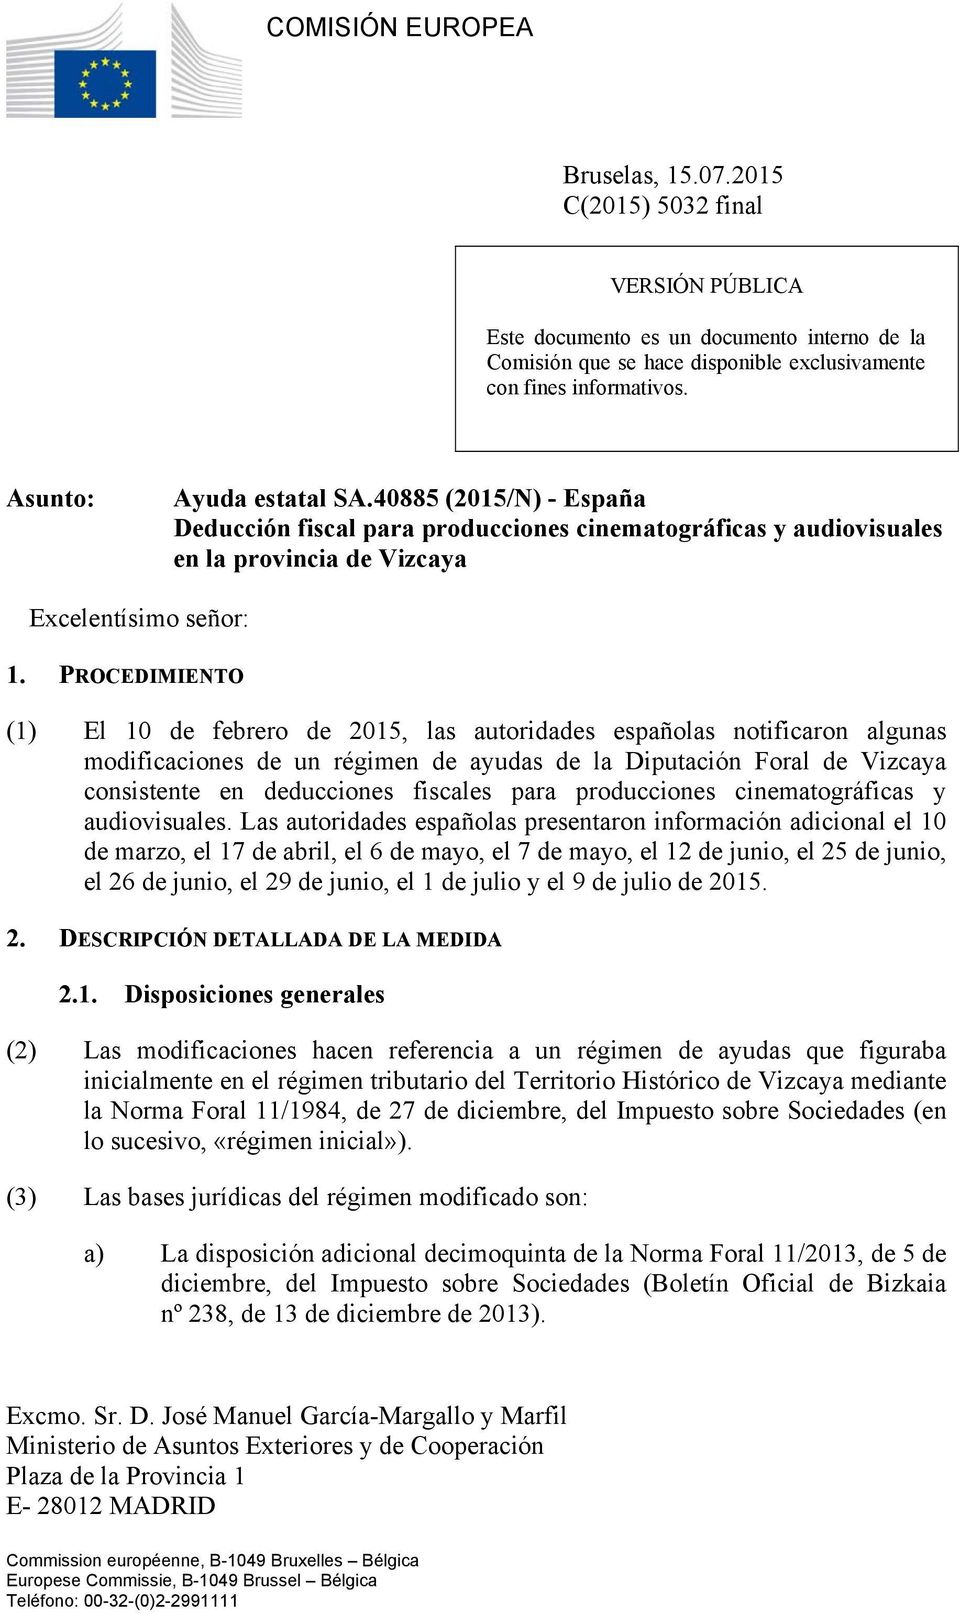 PROCEDIMIENTO (1) El 10 de febrero de 2015, las autoridades españolas notificaron algunas modificaciones de un régimen de ayudas de la Diputación Foral de Vizcaya consistente en deducciones fiscales